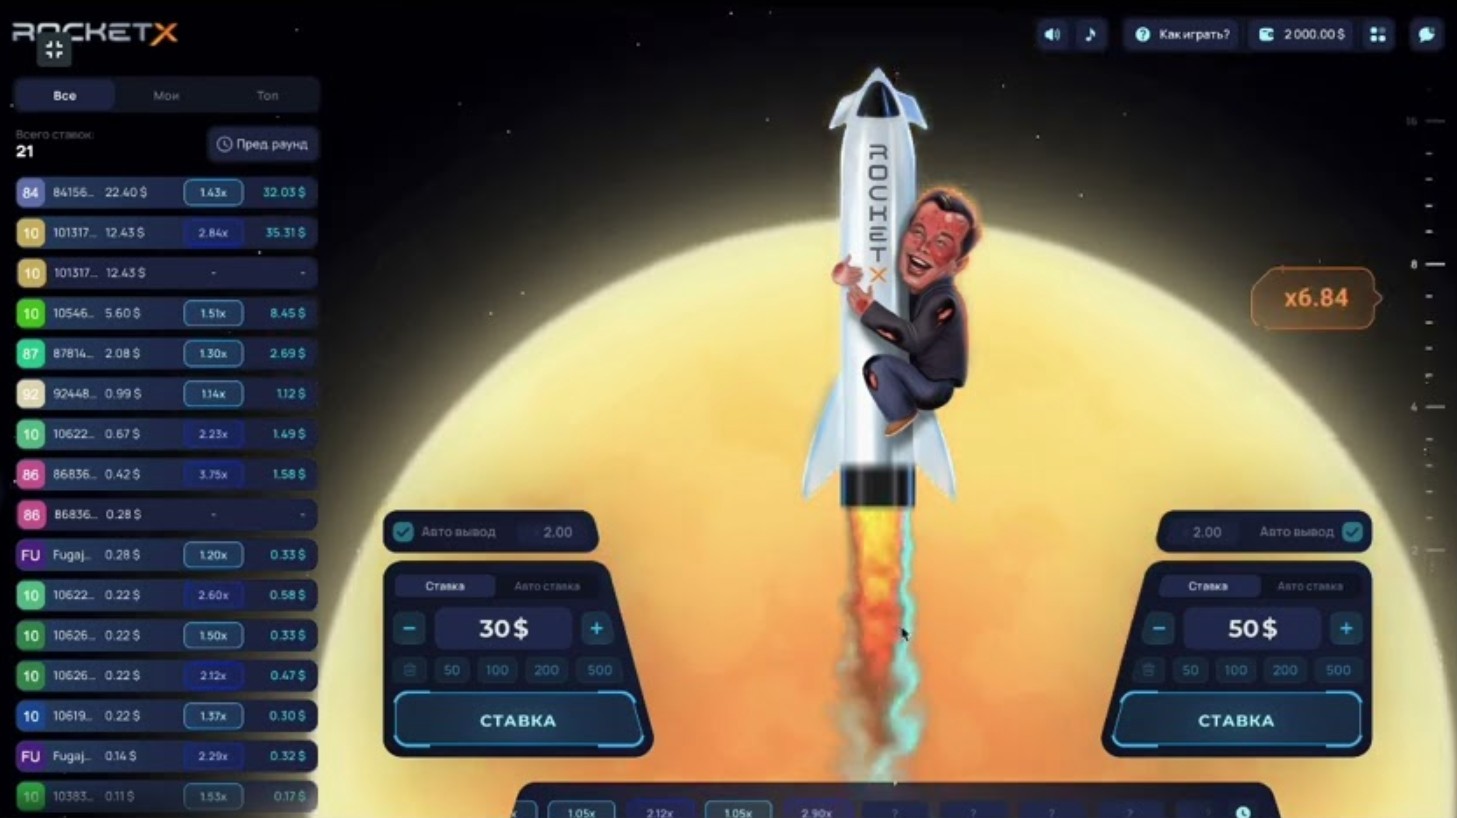 Обзор игры Rocket X